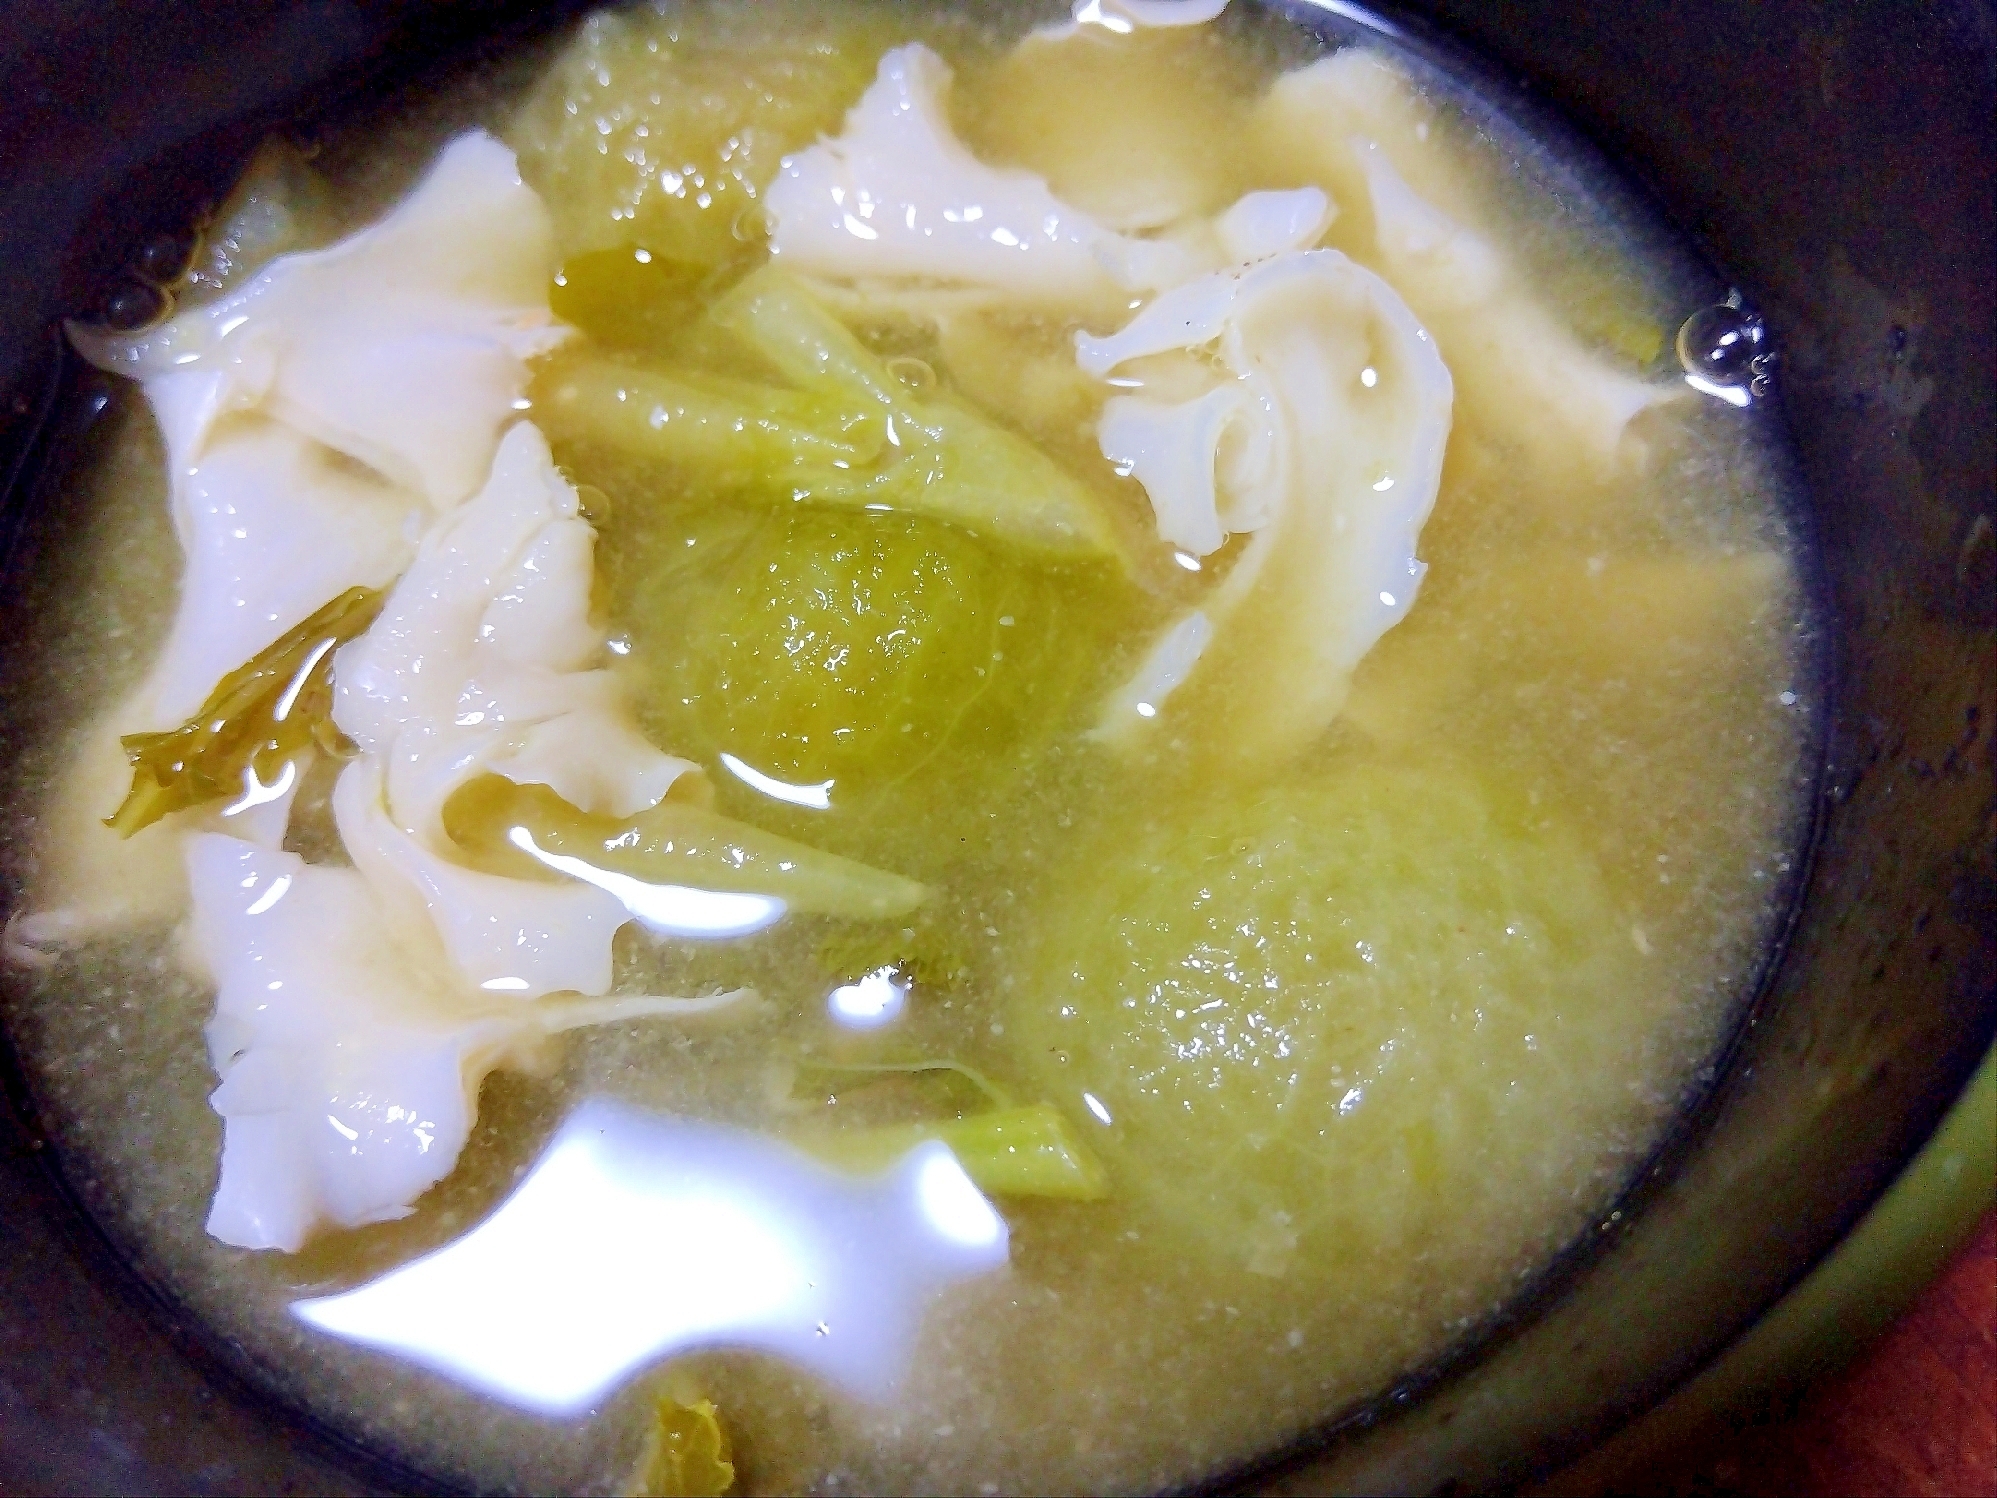 緑ミニトマト&ハナビラタケ&大根葉&ルッコラ味噌汁